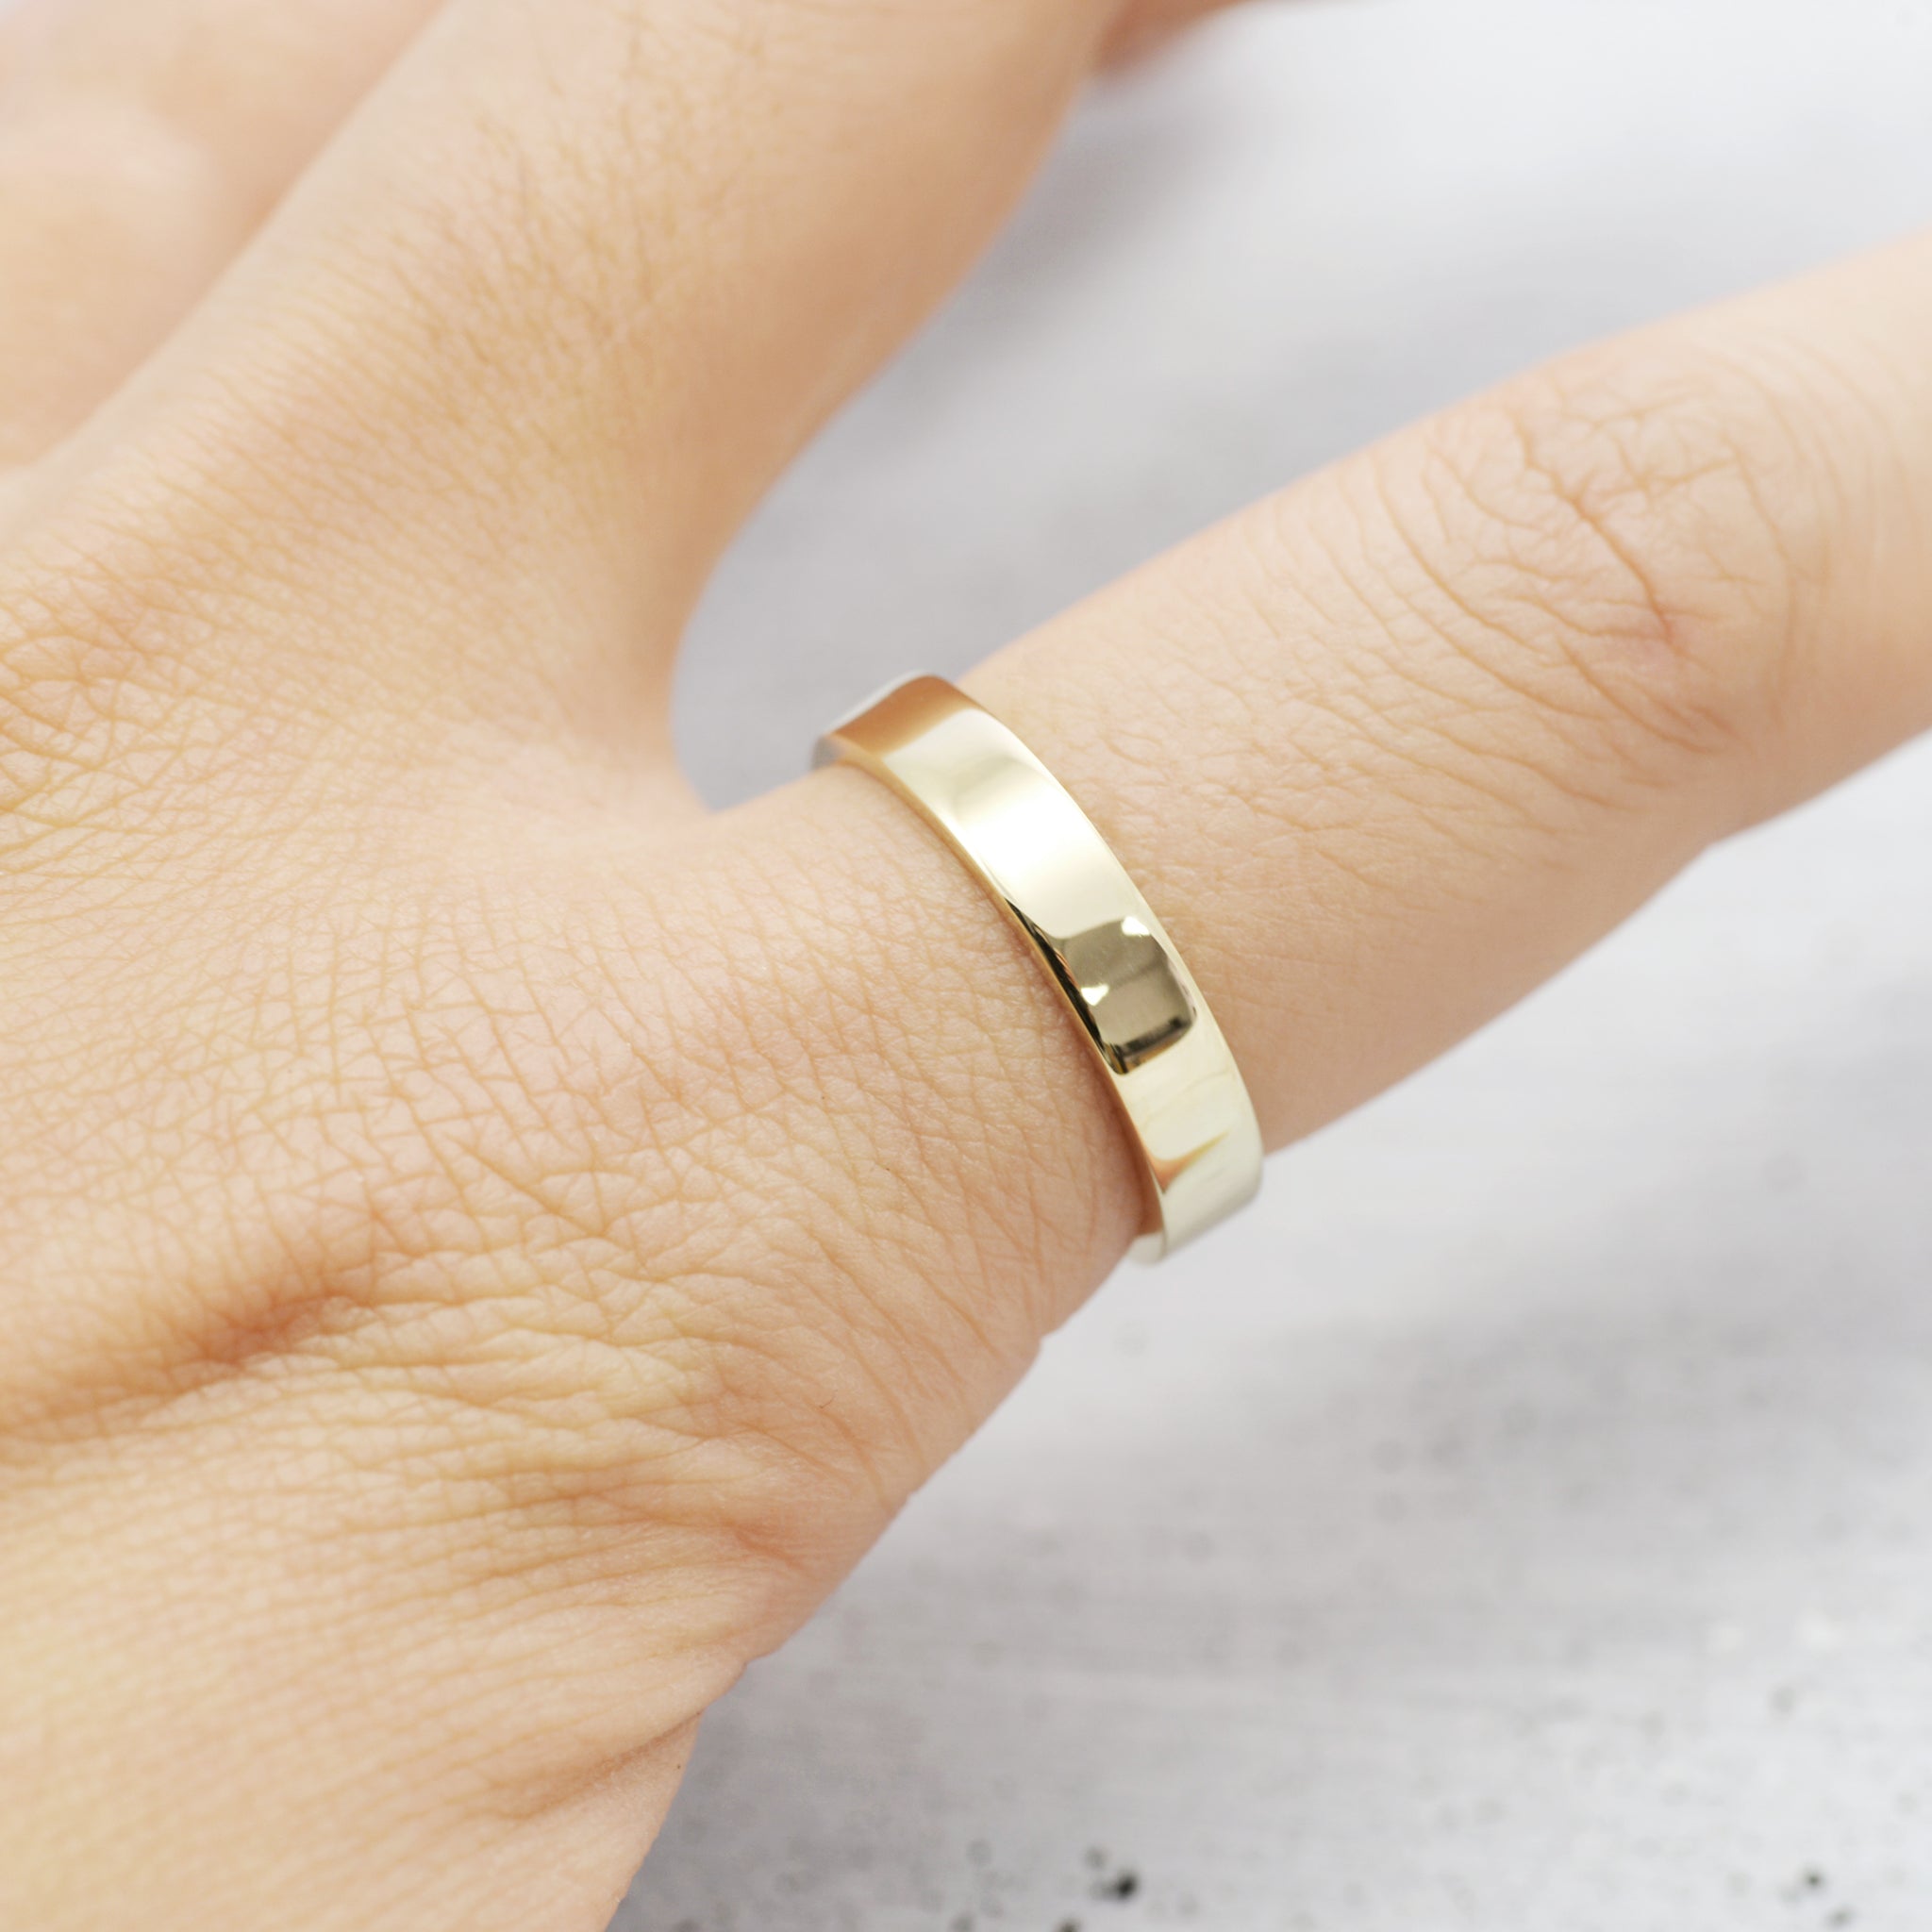 Flat wedding band Ring (medium/ 3.3mm) - 14K/ 18K Gold